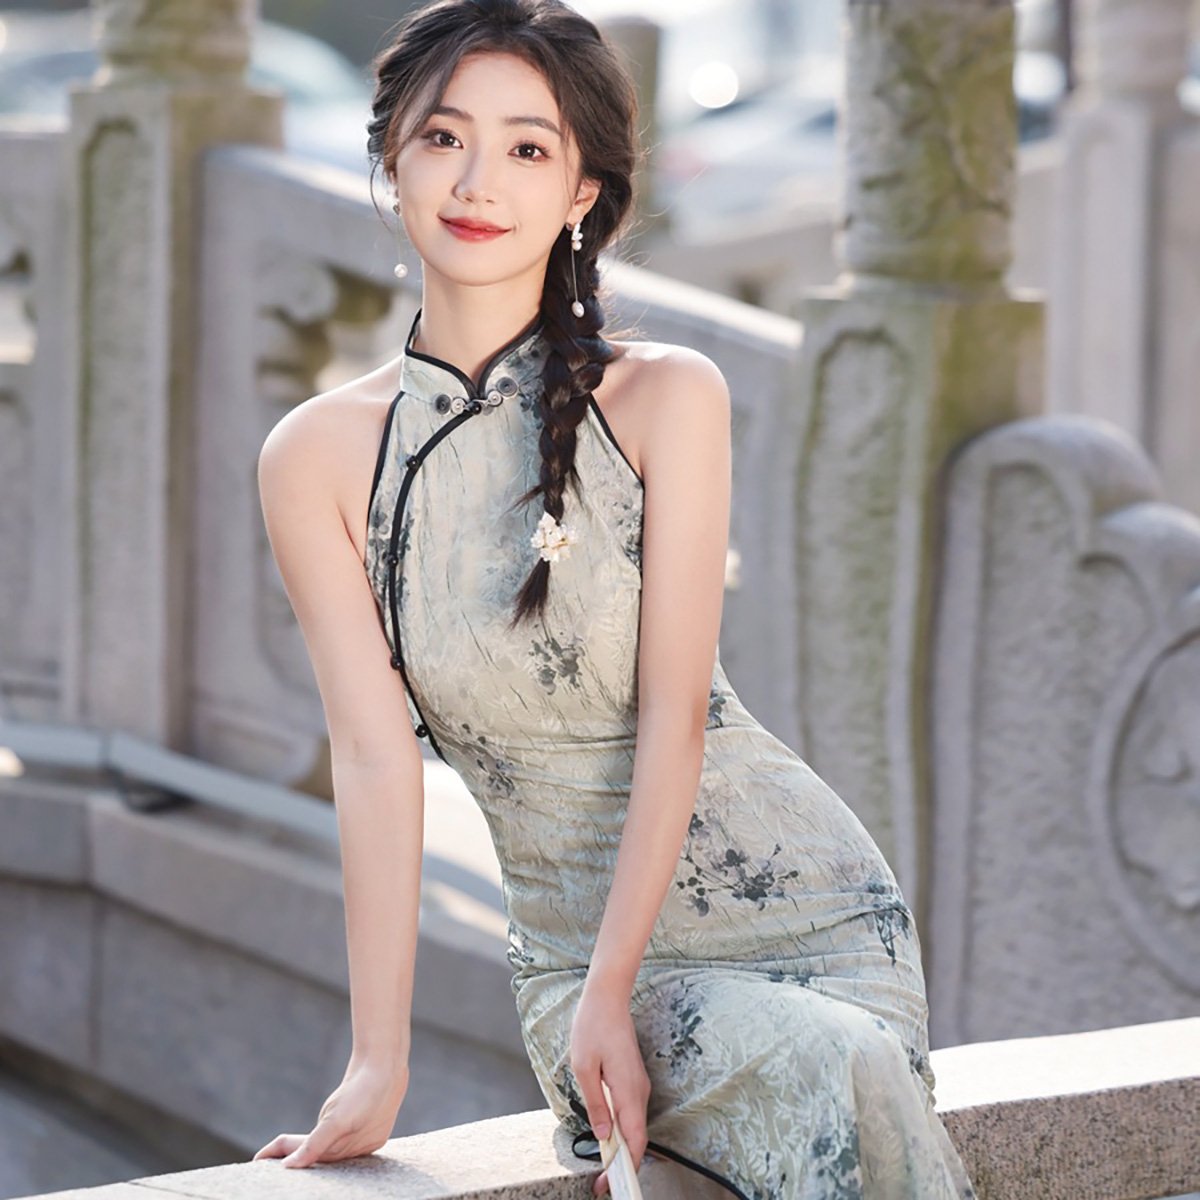 Sleeveless Floral Cheongsam Dress